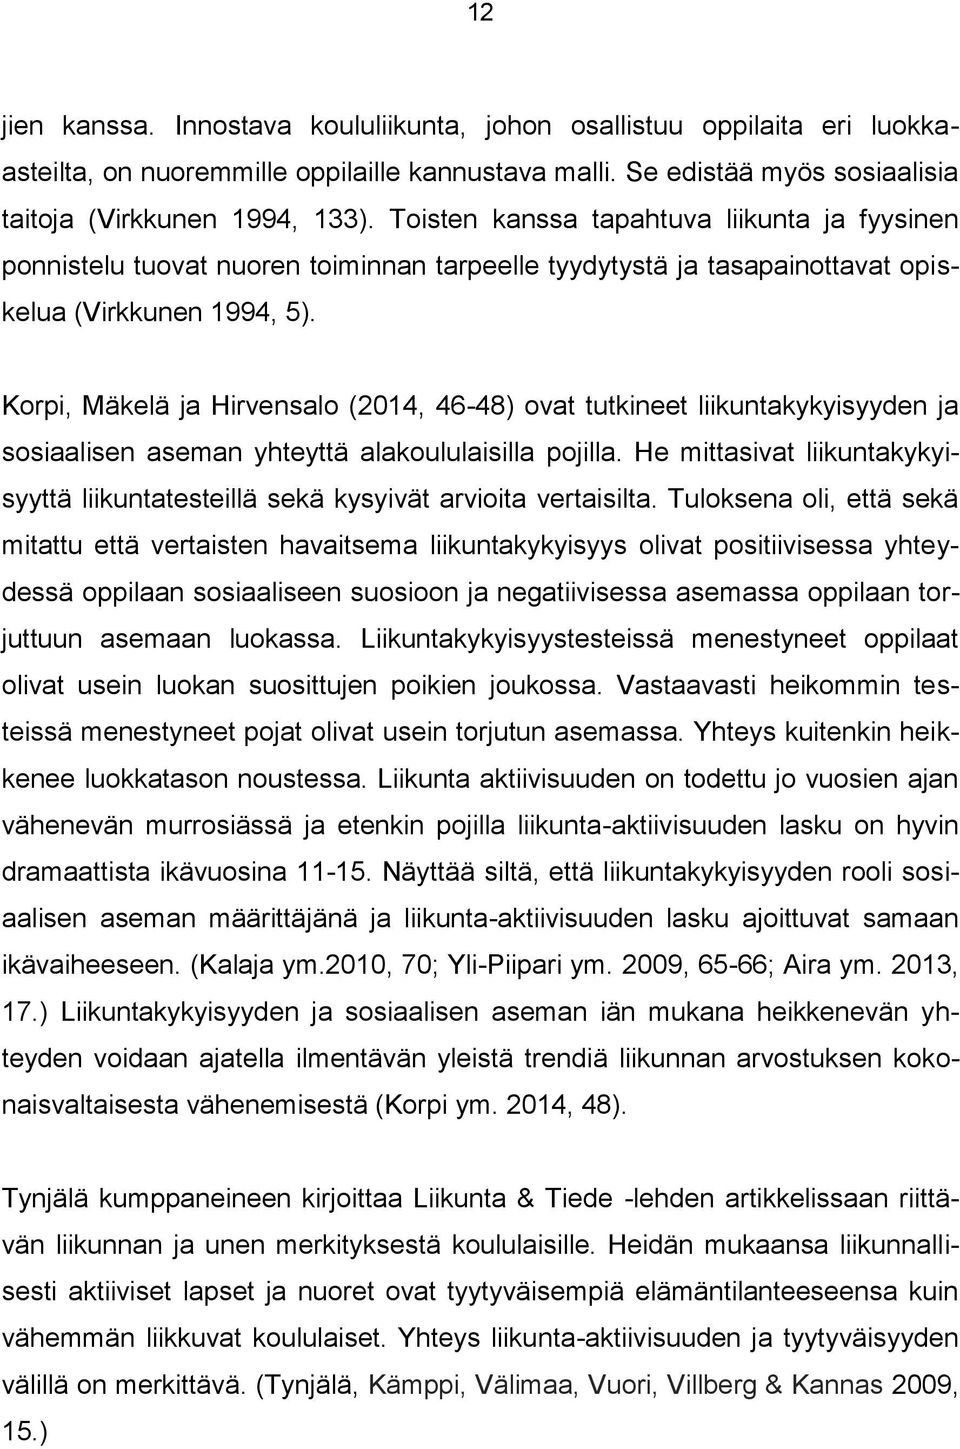 Korpi, Mäkelä ja Hirvensalo (2014, 46-48) ovat tutkineet liikuntakykyisyyden ja sosiaalisen aseman yhteyttä alakoululaisilla pojilla.